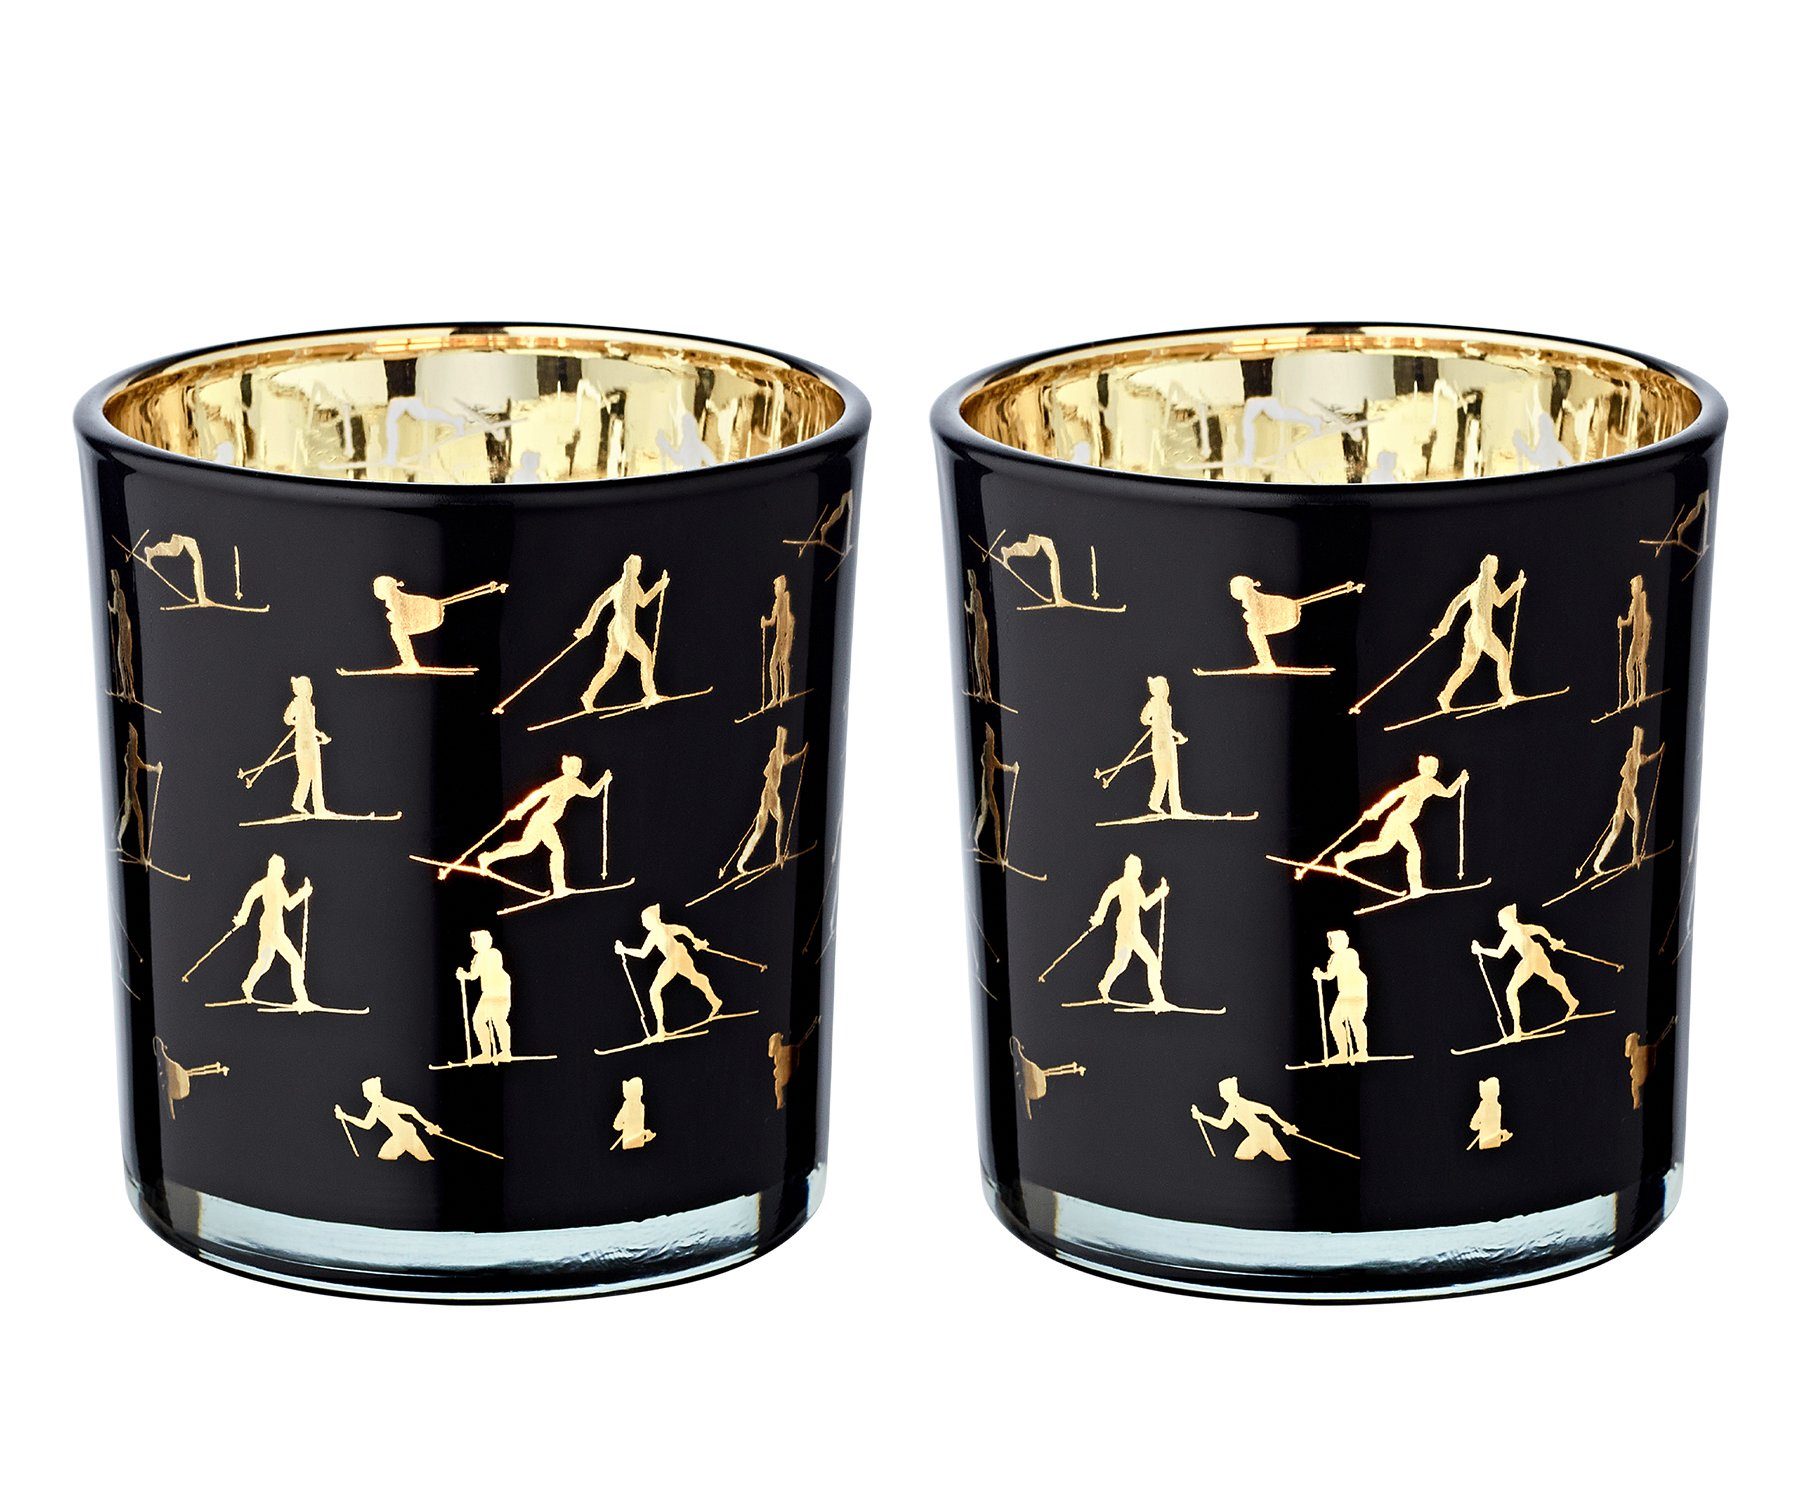 EDZARD Sektkühler Monty, Windlicht, Kerzenglas mit Monty-Motiv in Grün/Gold-Optik, Teelichtglas für Teelichter, Höhe 8 cm, Ø 7,5 cm | Windlichter